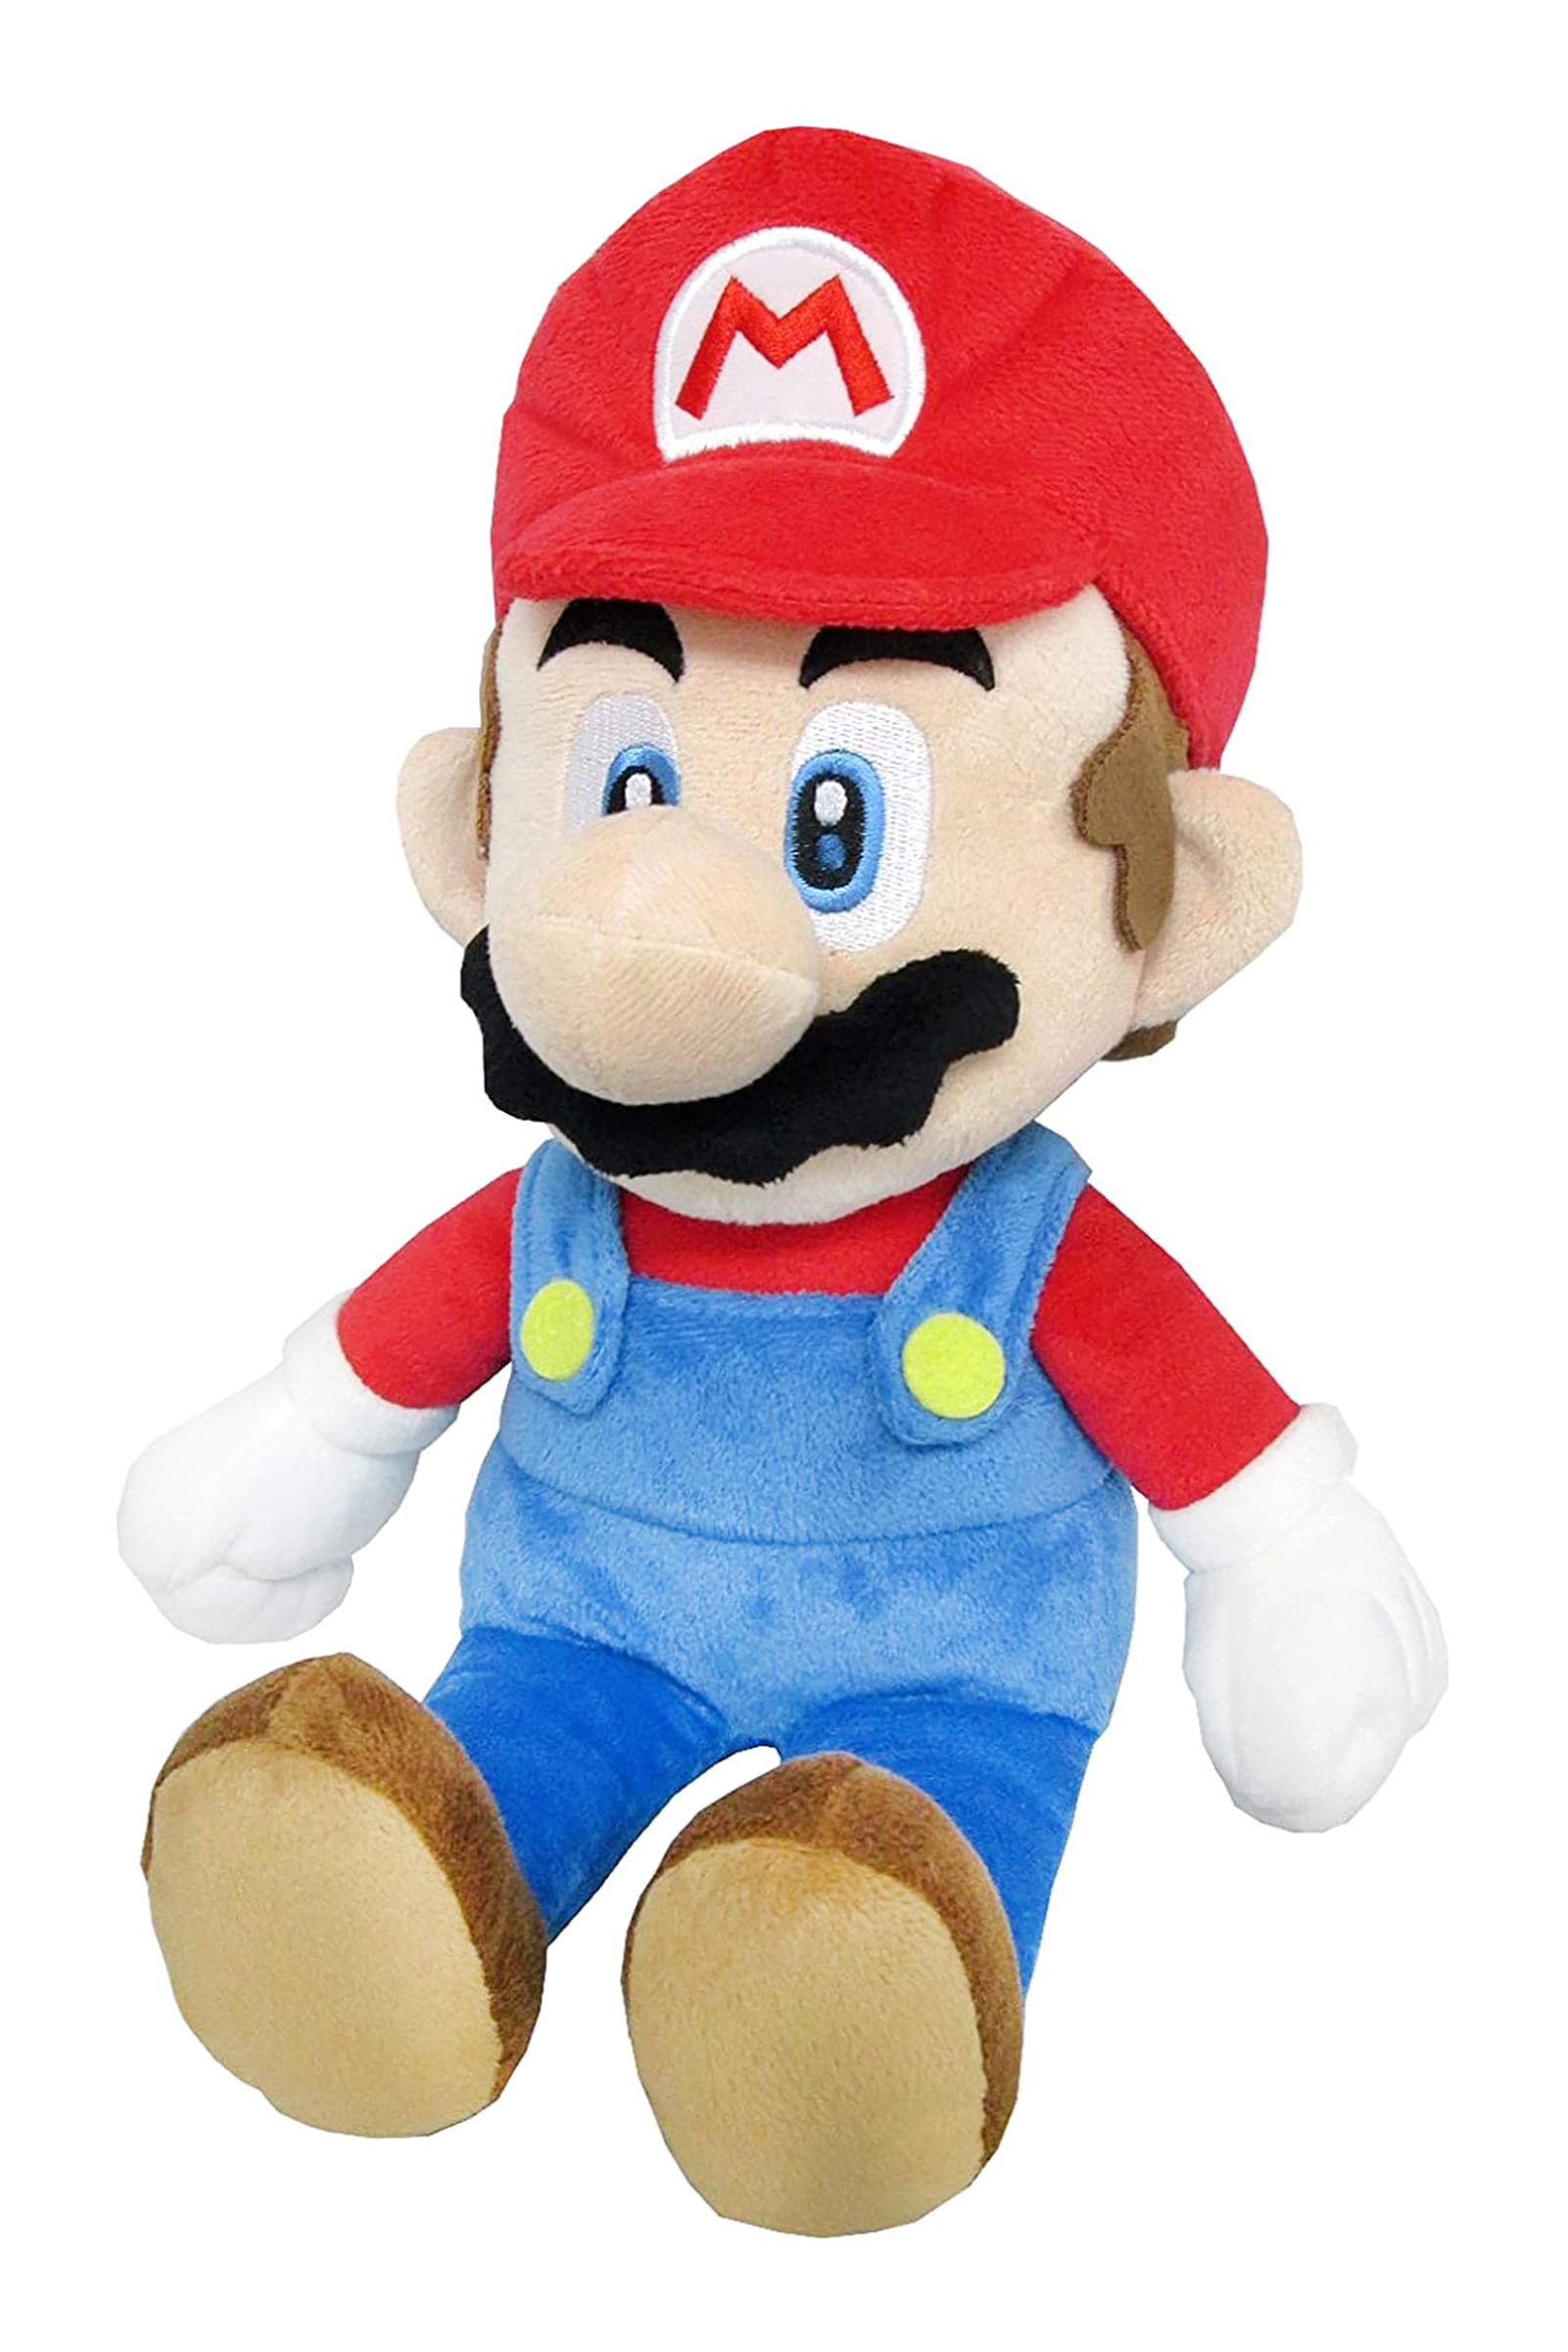 Super Mario All Star Collection 14 Inch Plush | Mario